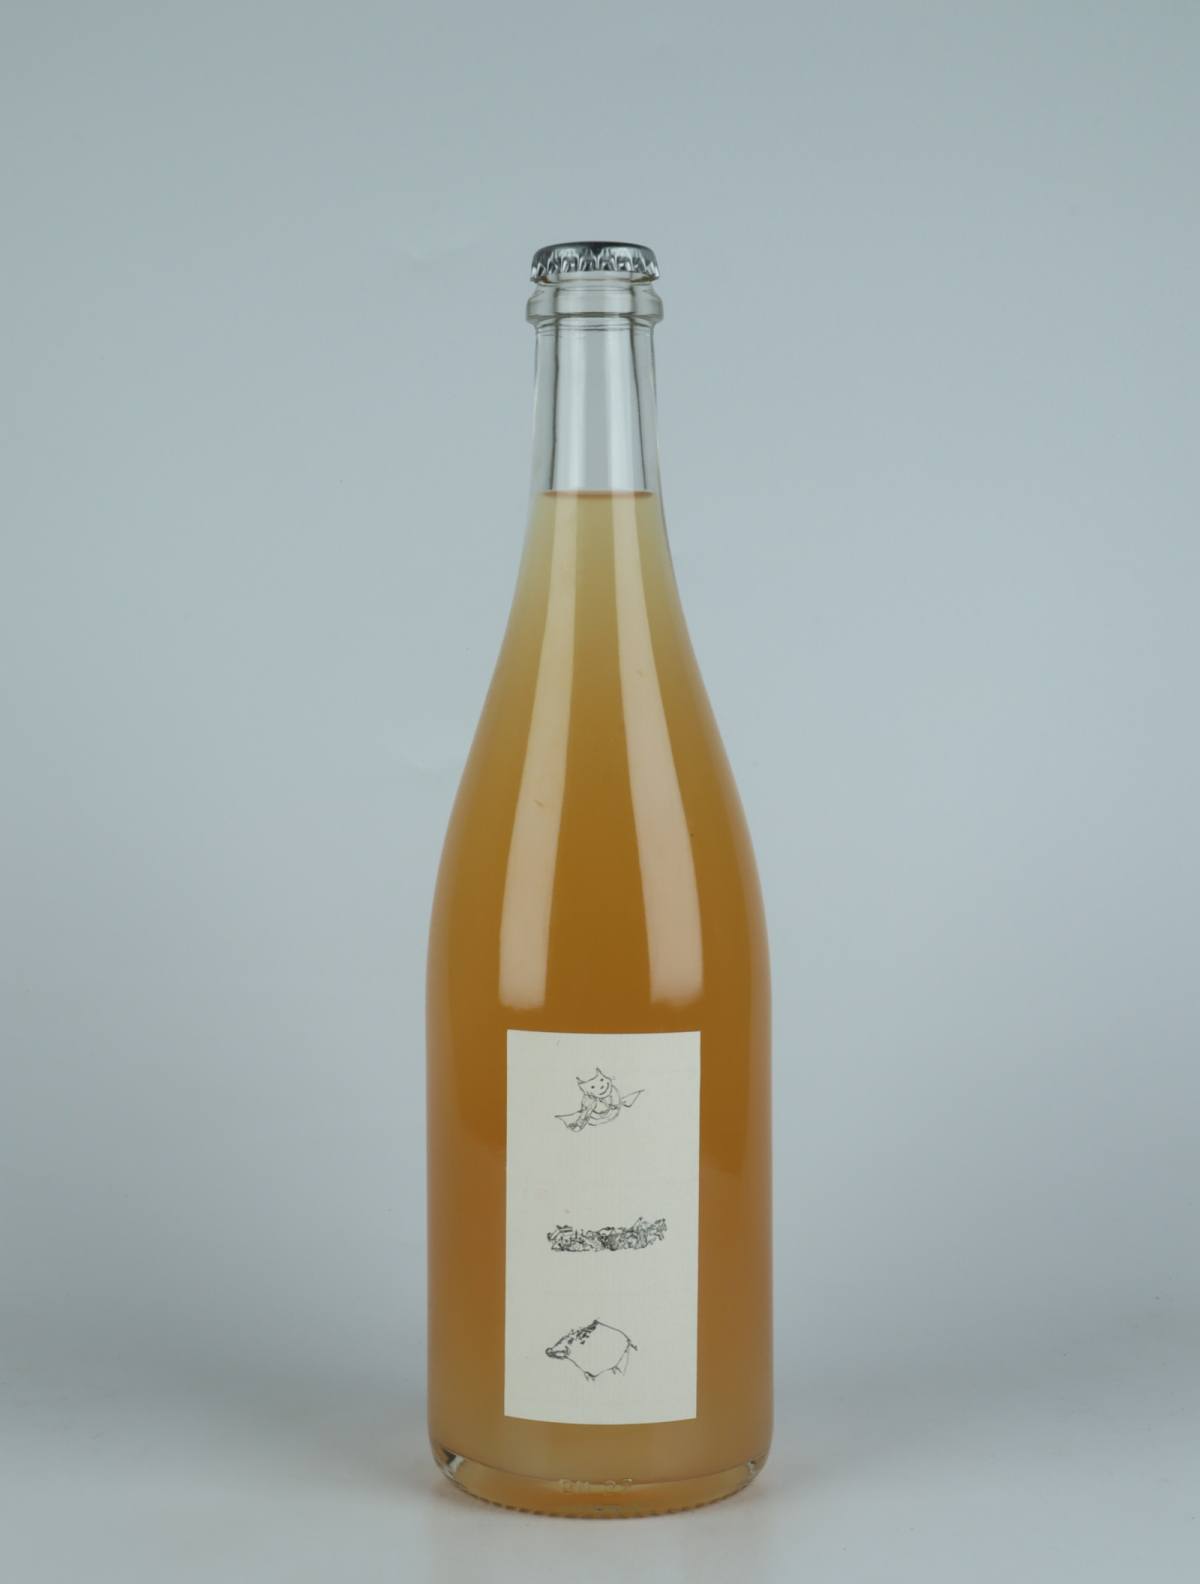 En flaske 2022 Ciulin Hvidvin fra Absurde Génie des Fleurs, Languedoc i Frankrig